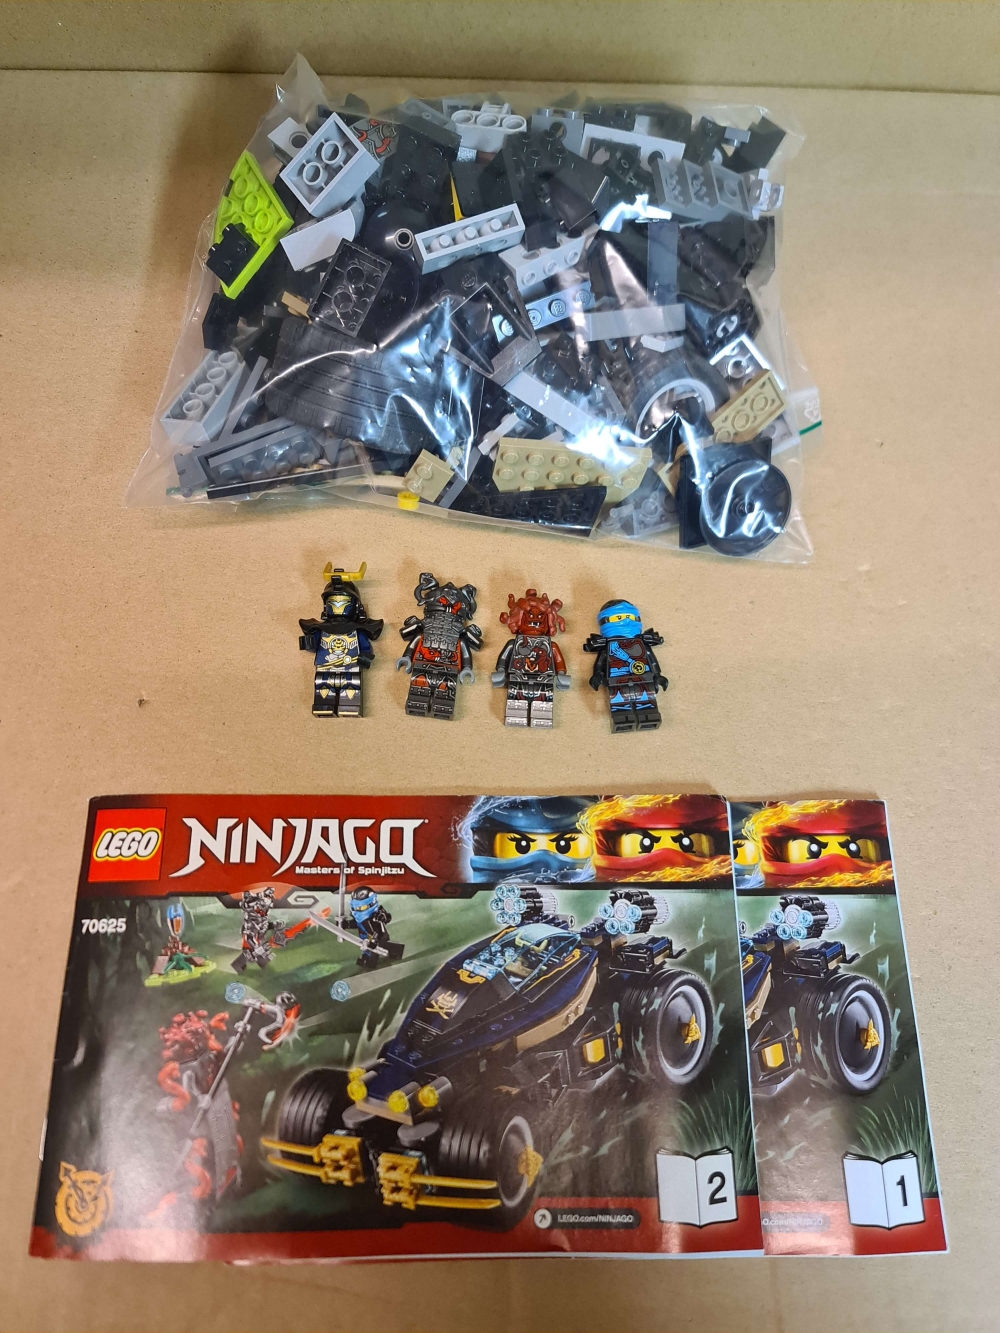 Sett 70625 fra Lego Ninjago : The Hands of Time serien.
Meget pent.
Komplett med manual.